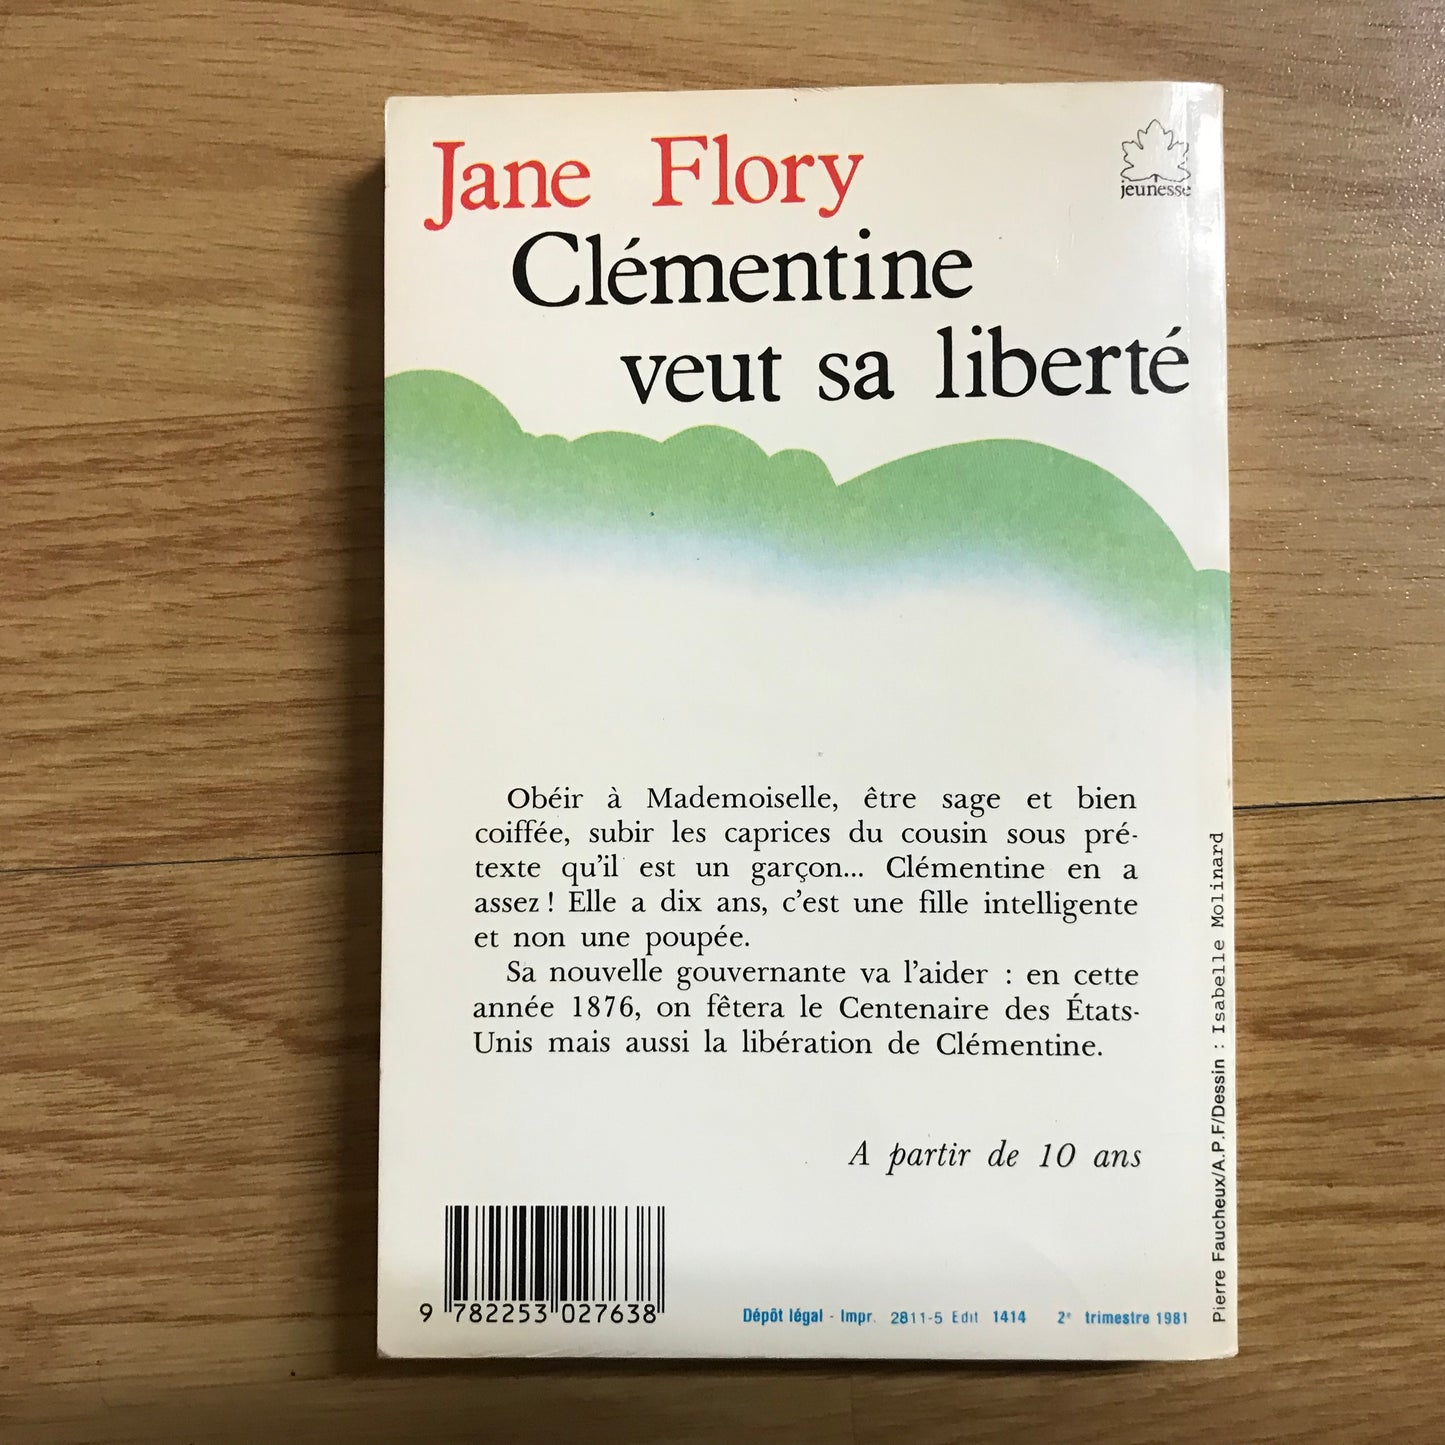 Flory, Jane - Clémentine veut sa liberté